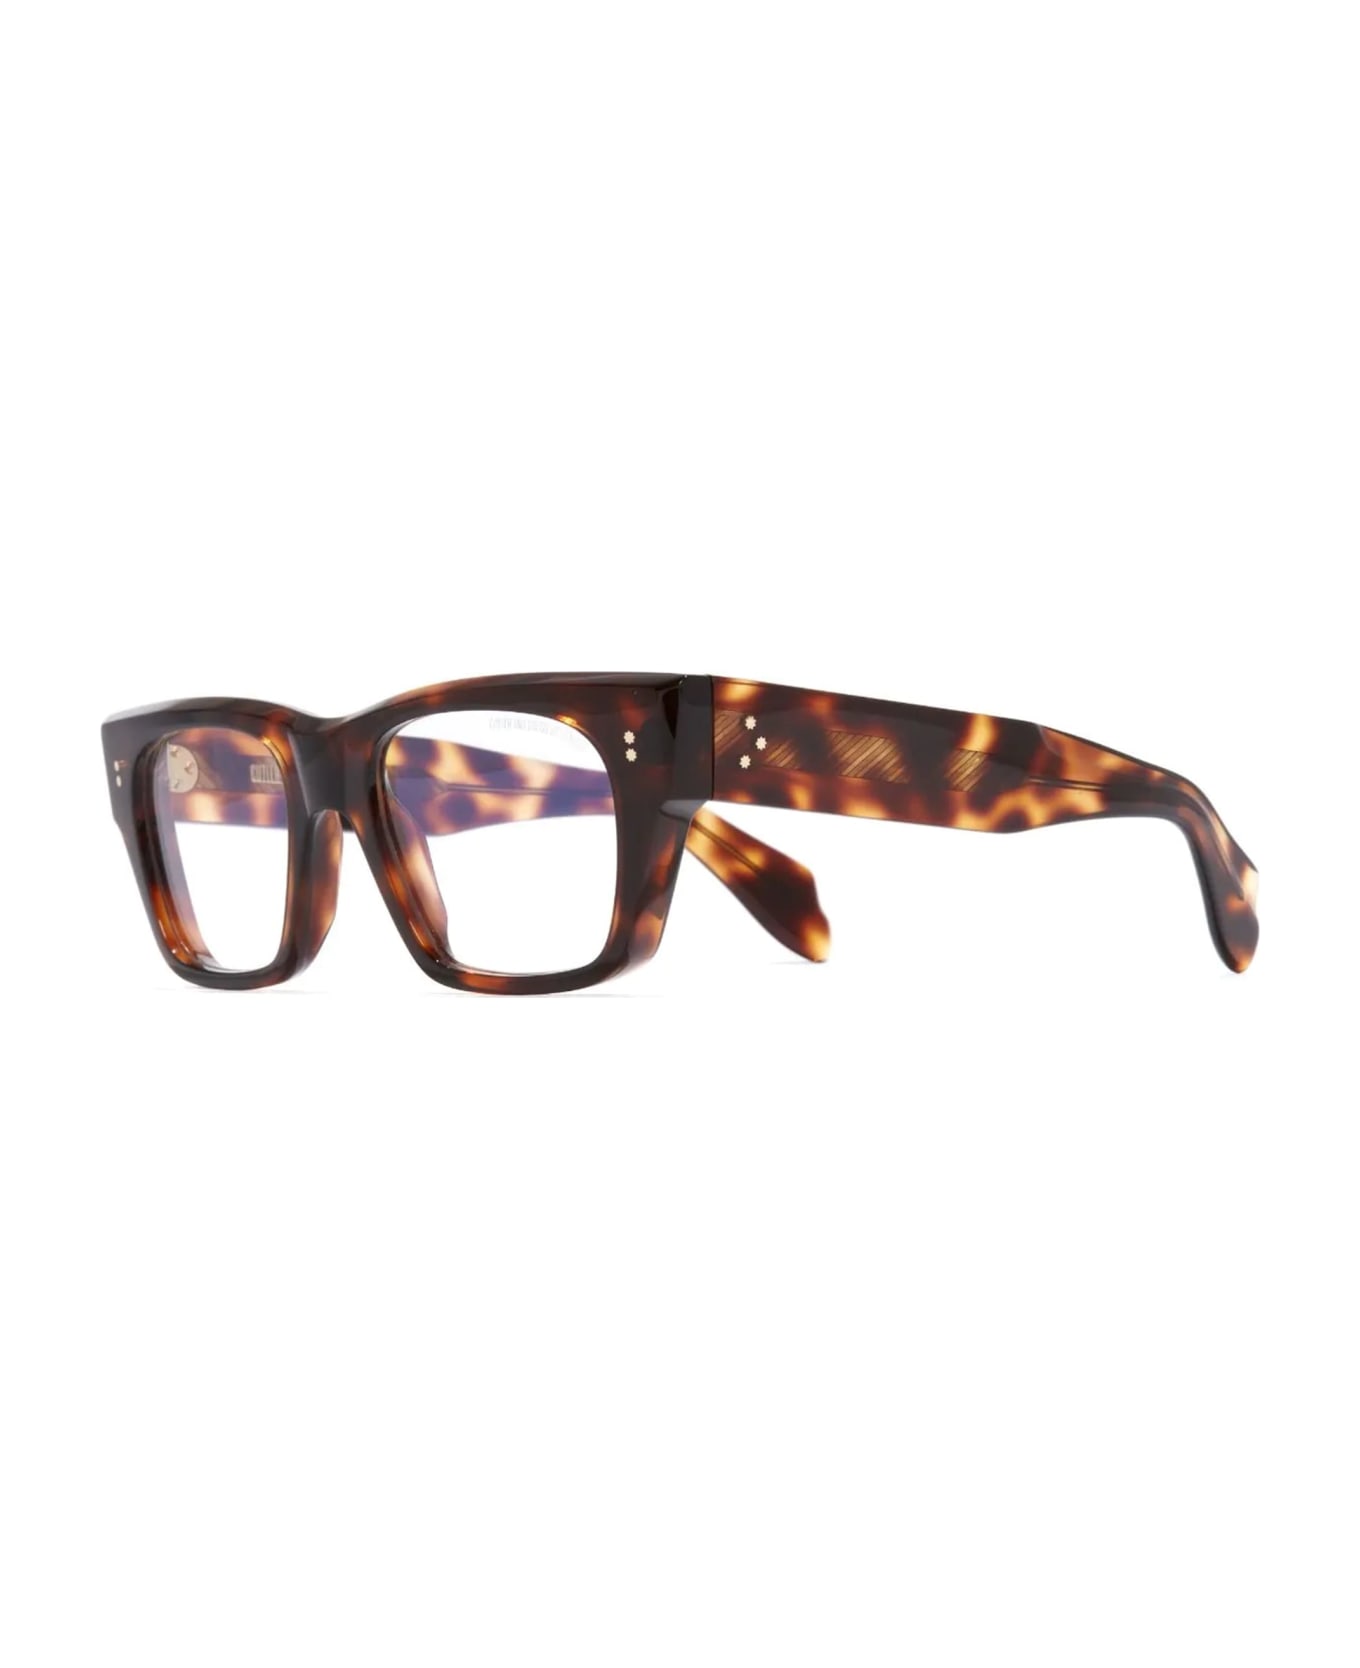 Cutler and Gross 9690 / Brown Havana Rx Glasses - Havana